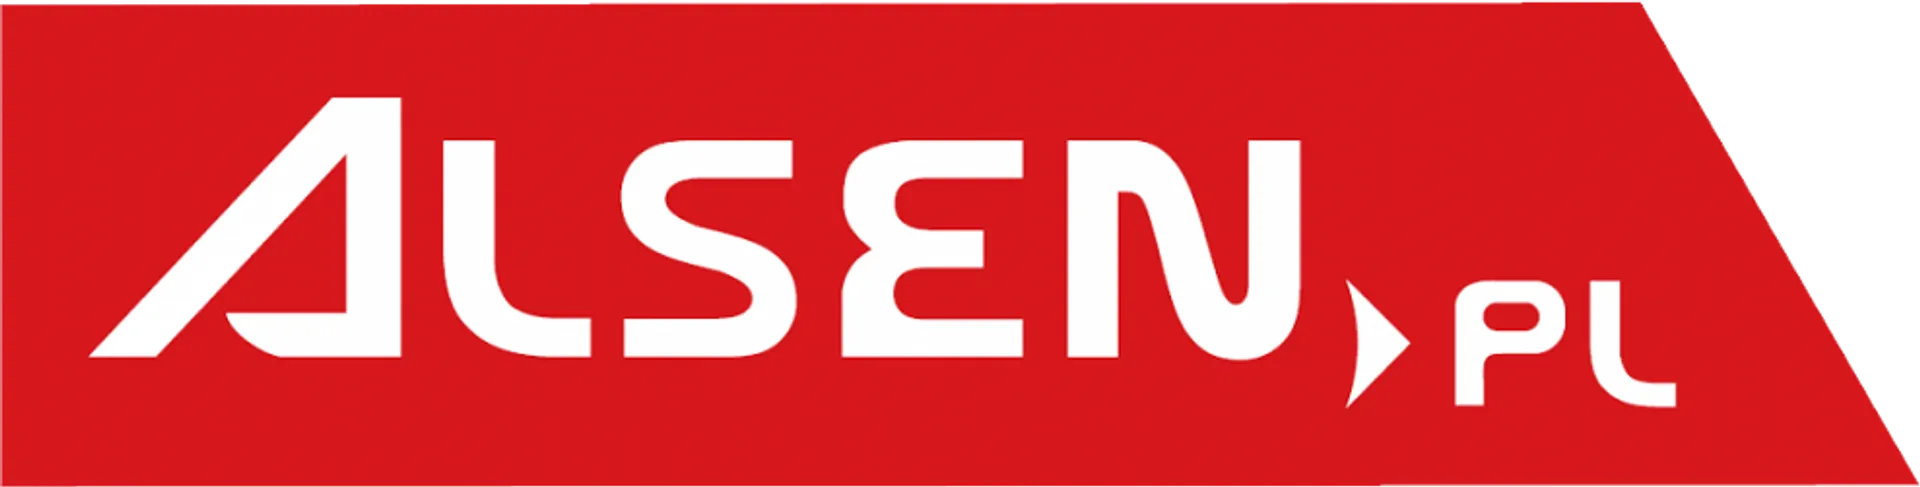 ALSEN logo